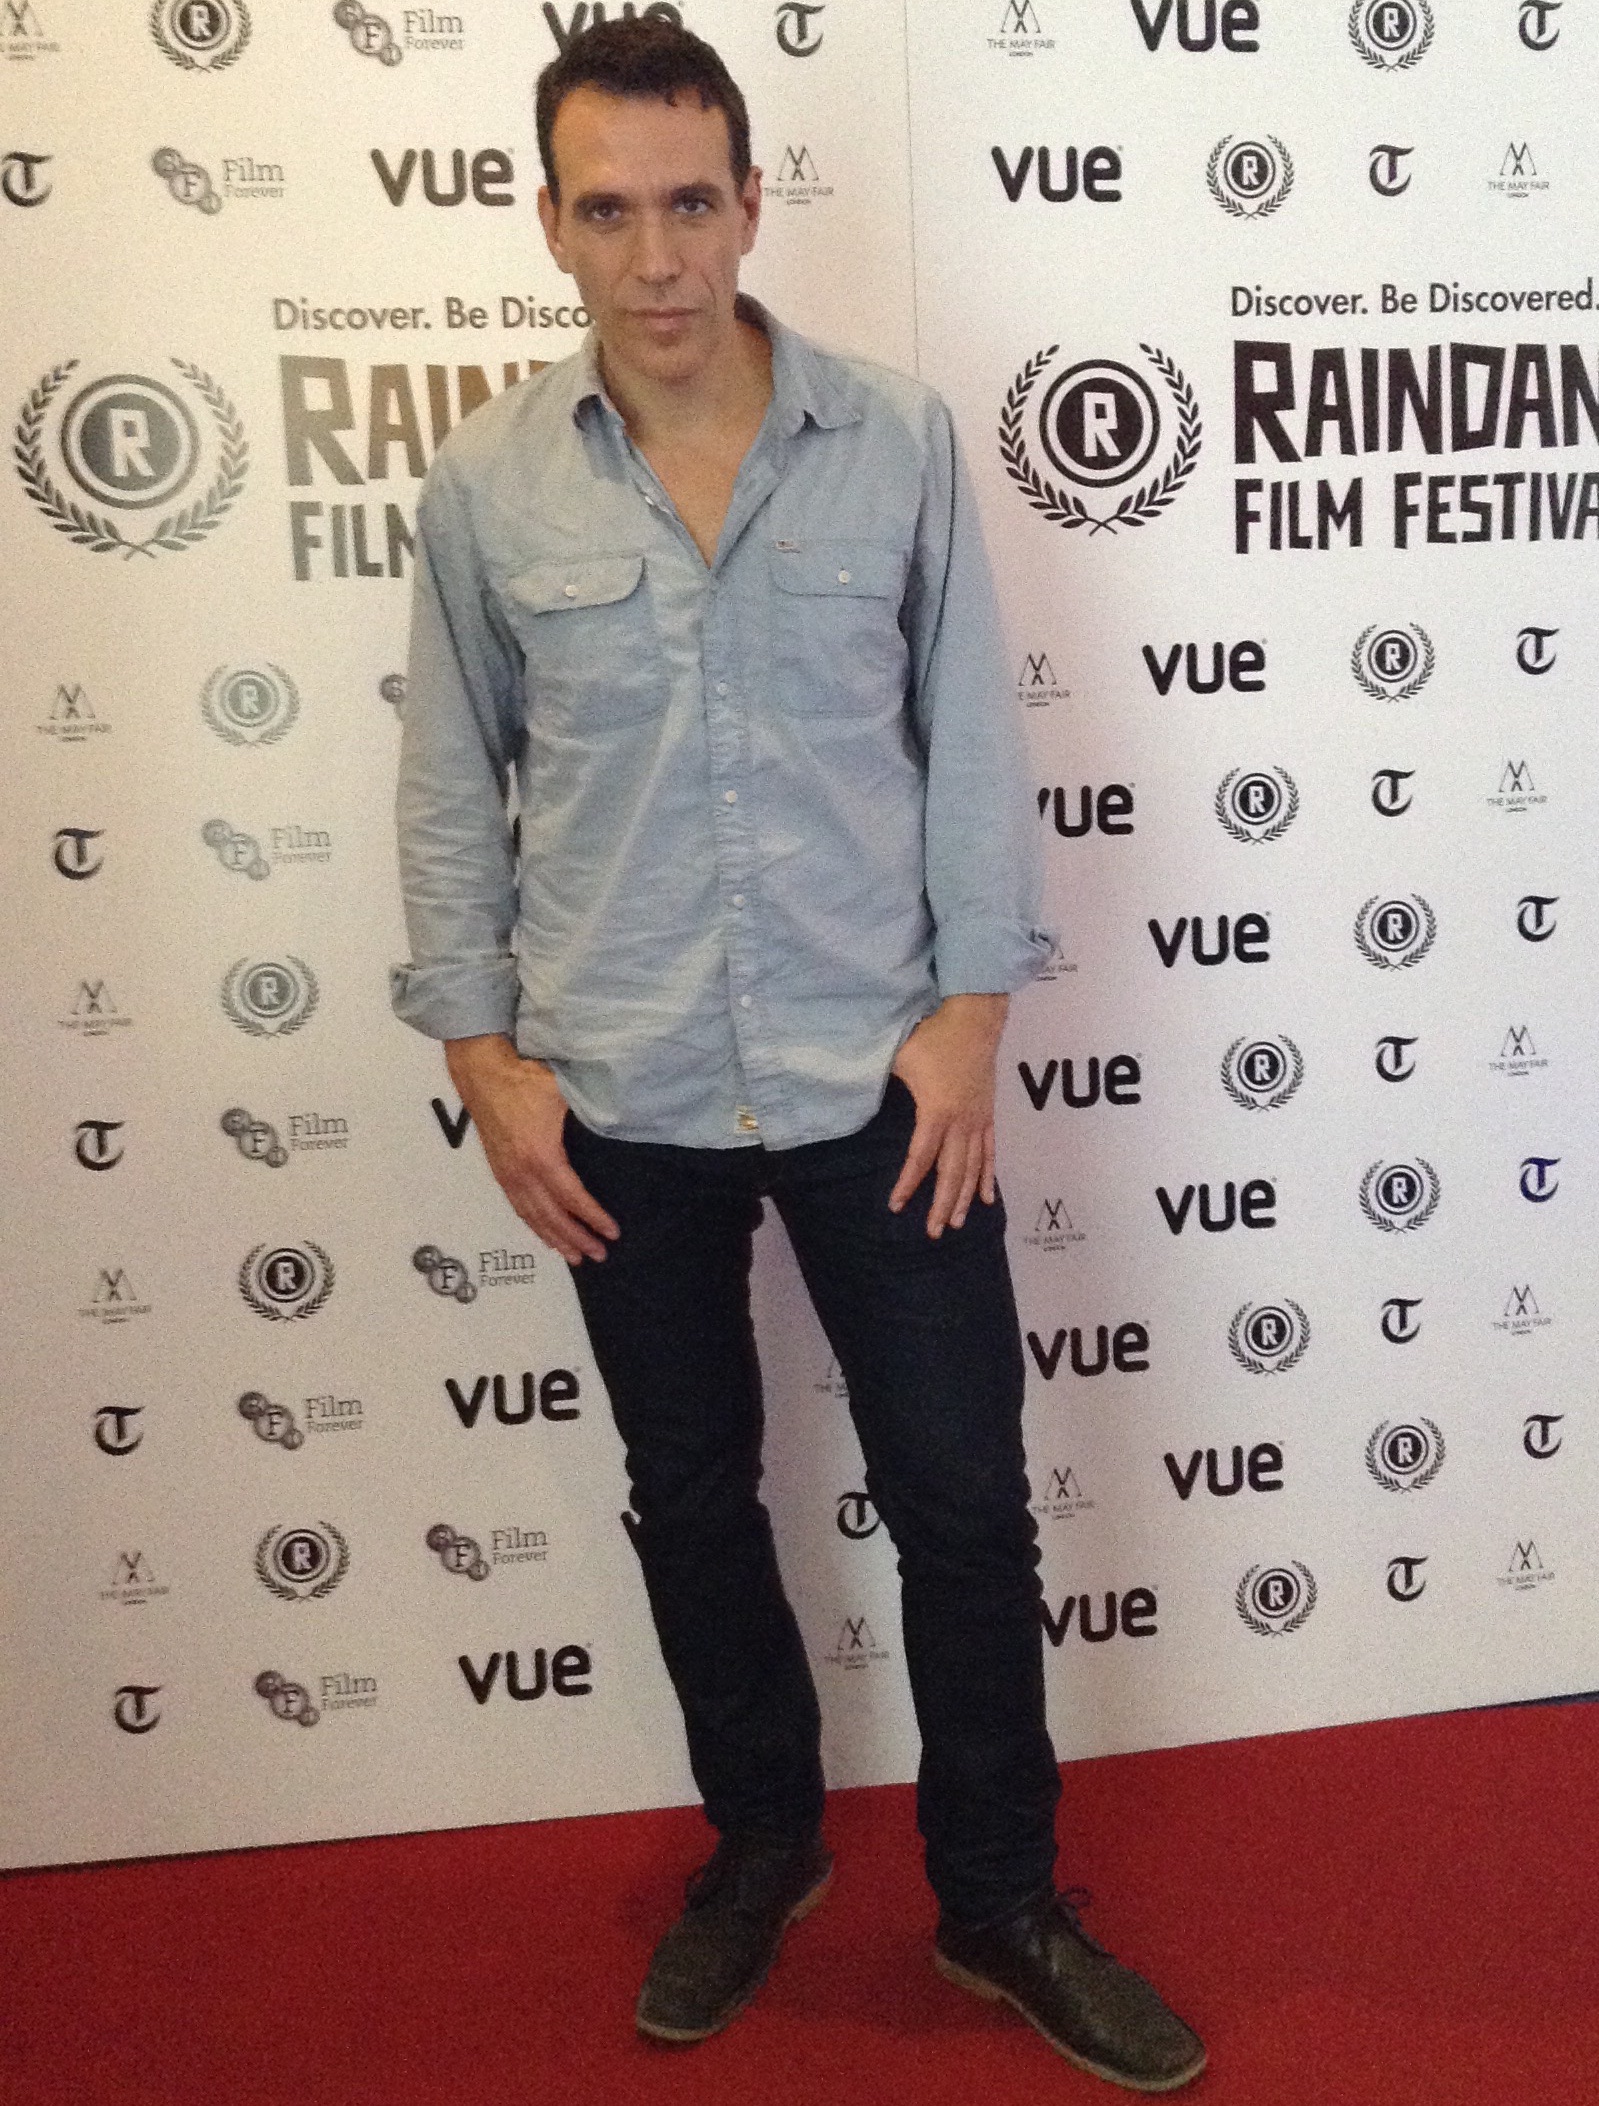 Raindance Film Festival, screening of FOUREVER